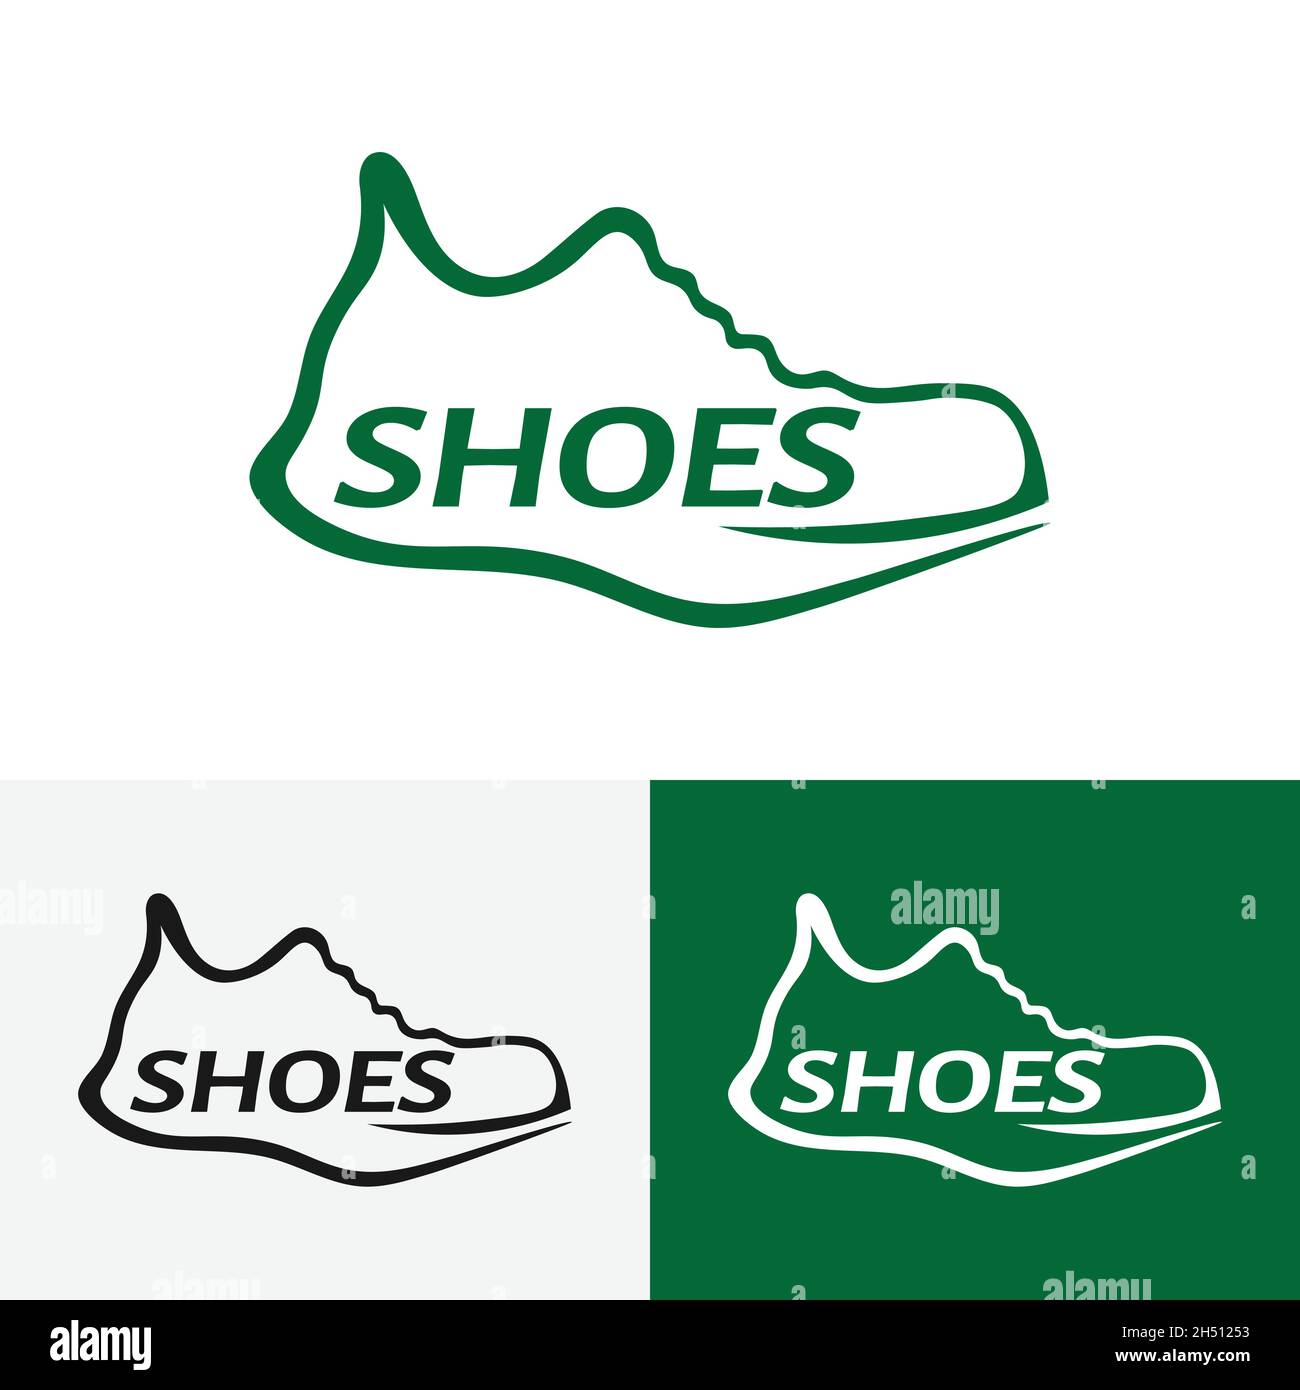 Modèle de logo style ligne pour chaussures de basket.Convient aux marques  de chaussures de sport, aux magasins de chaussures et aux magasins de sport  Image Vectorielle Stock - Alamy